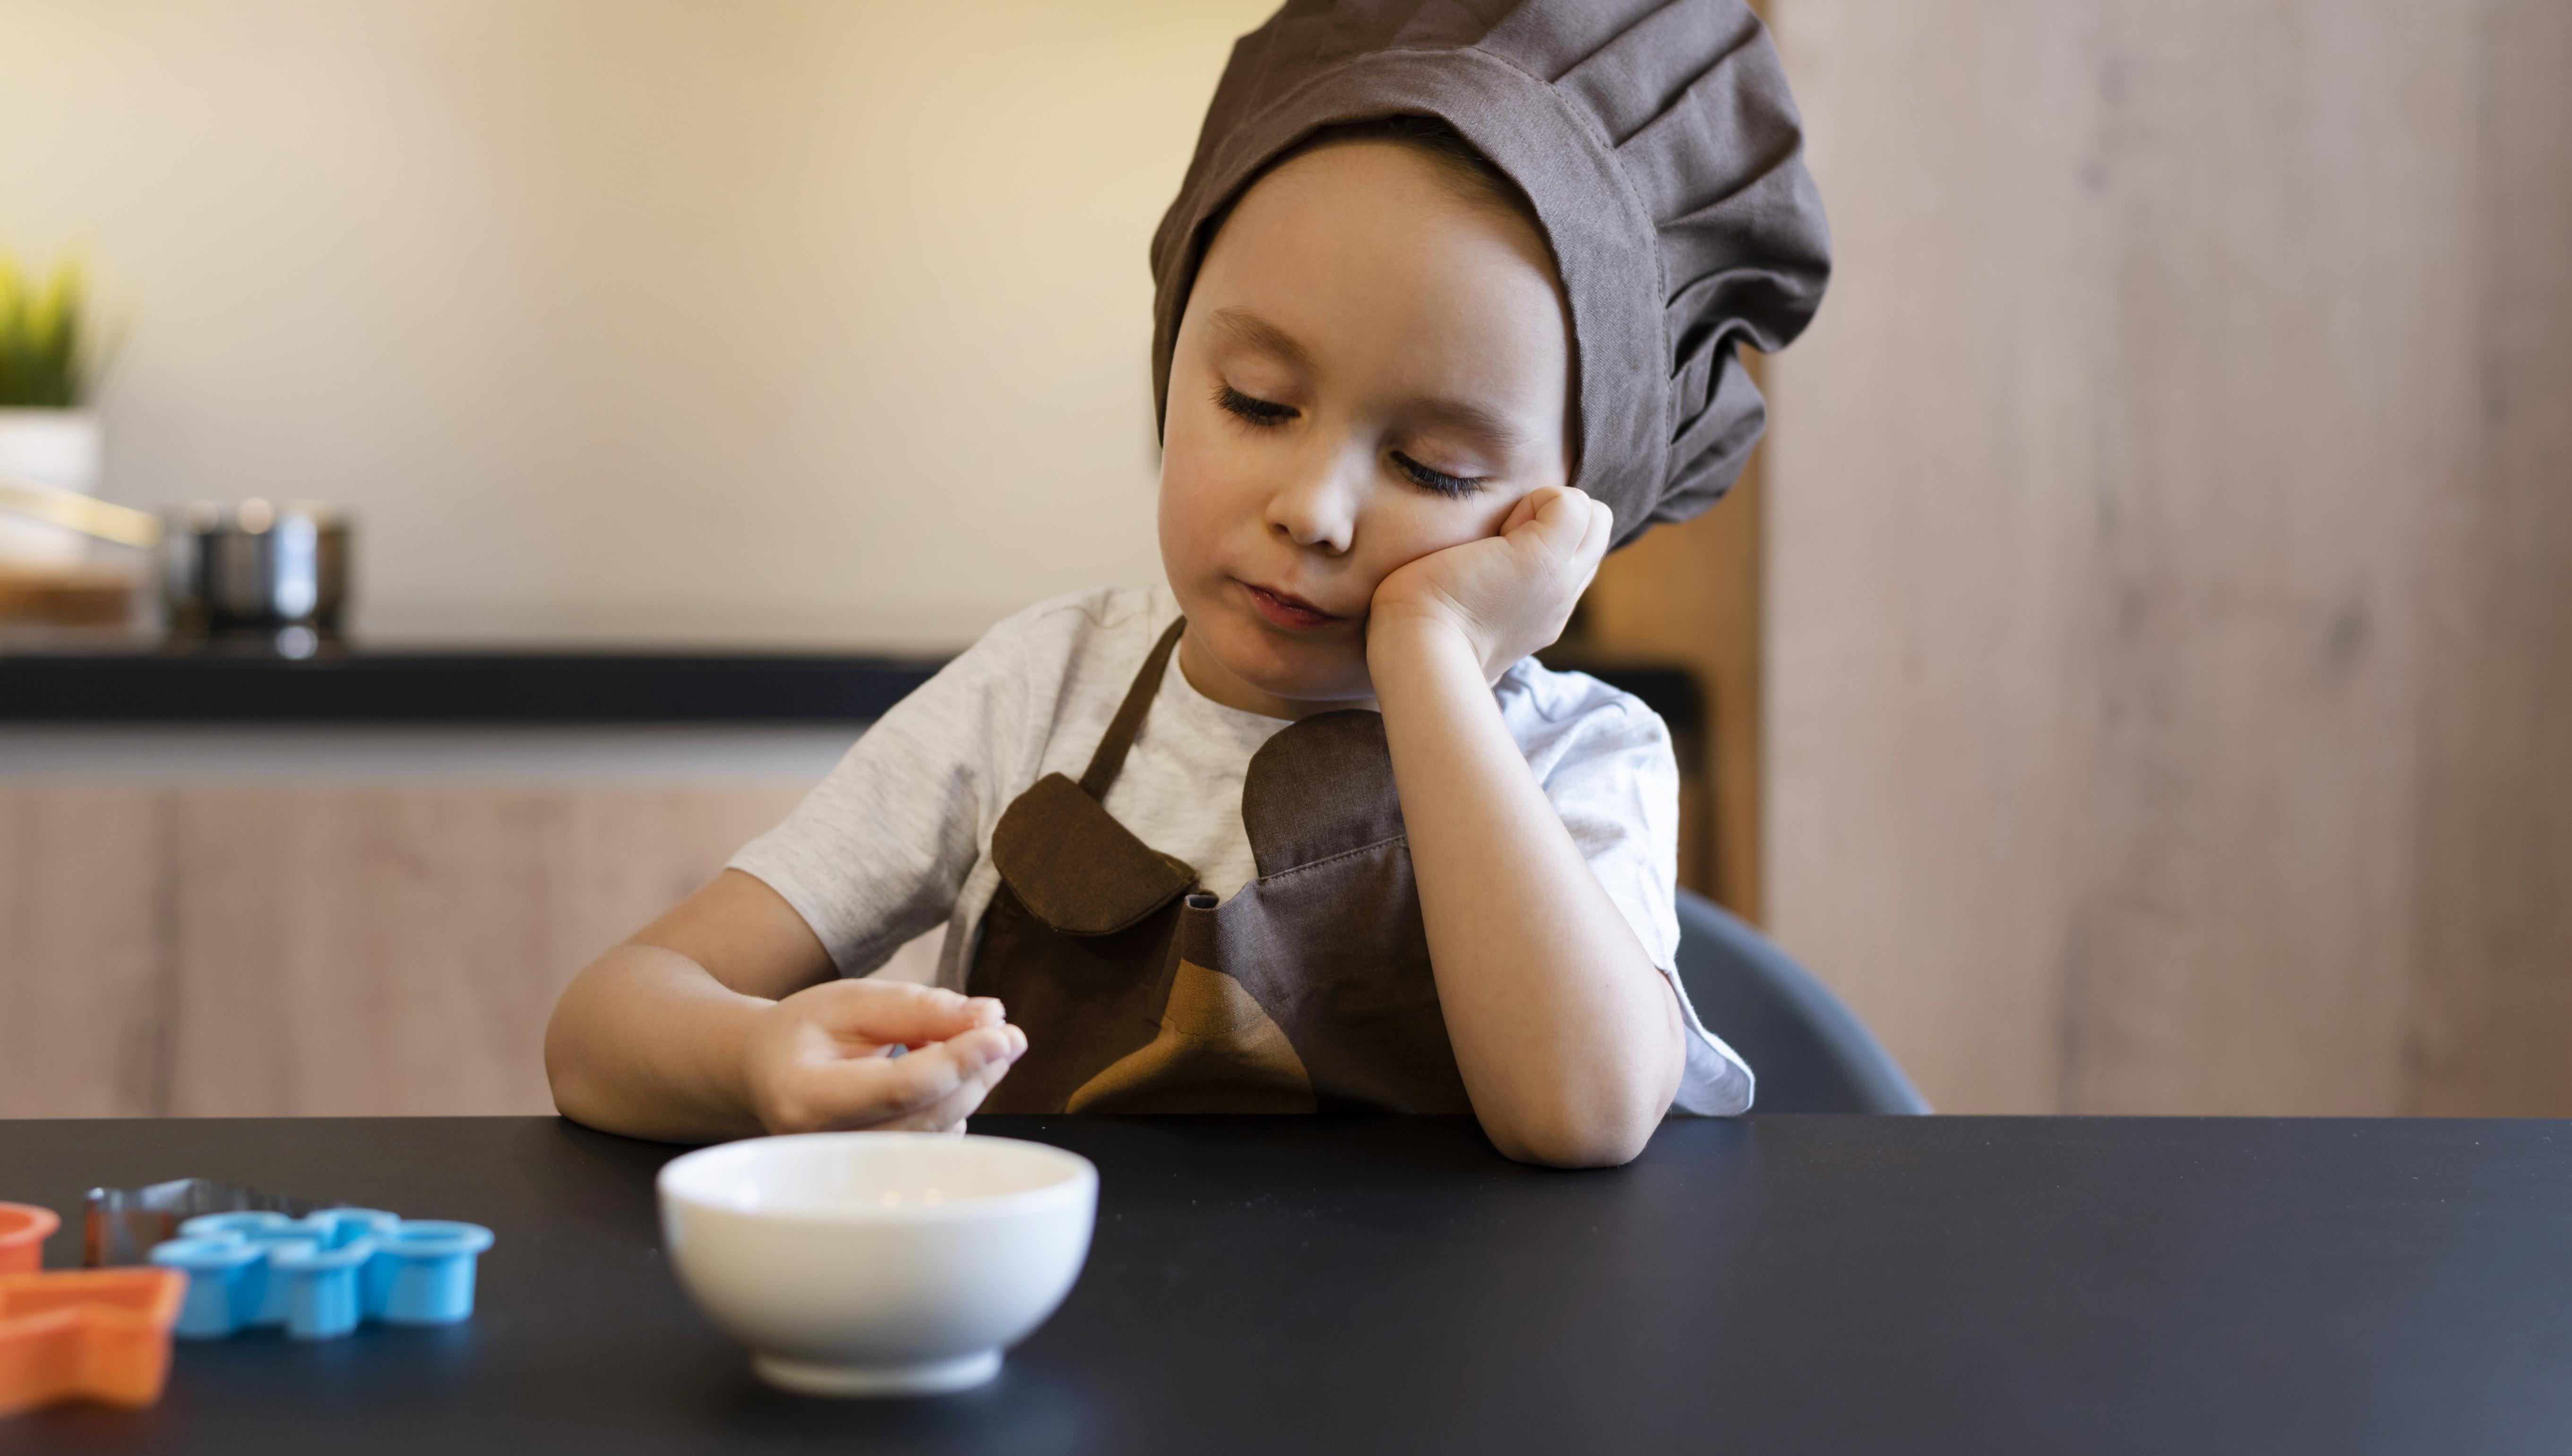 Mengatasi Tantangan Anak Mogok Makan dengan Pendekatan Bijak dan Penuh Kasih